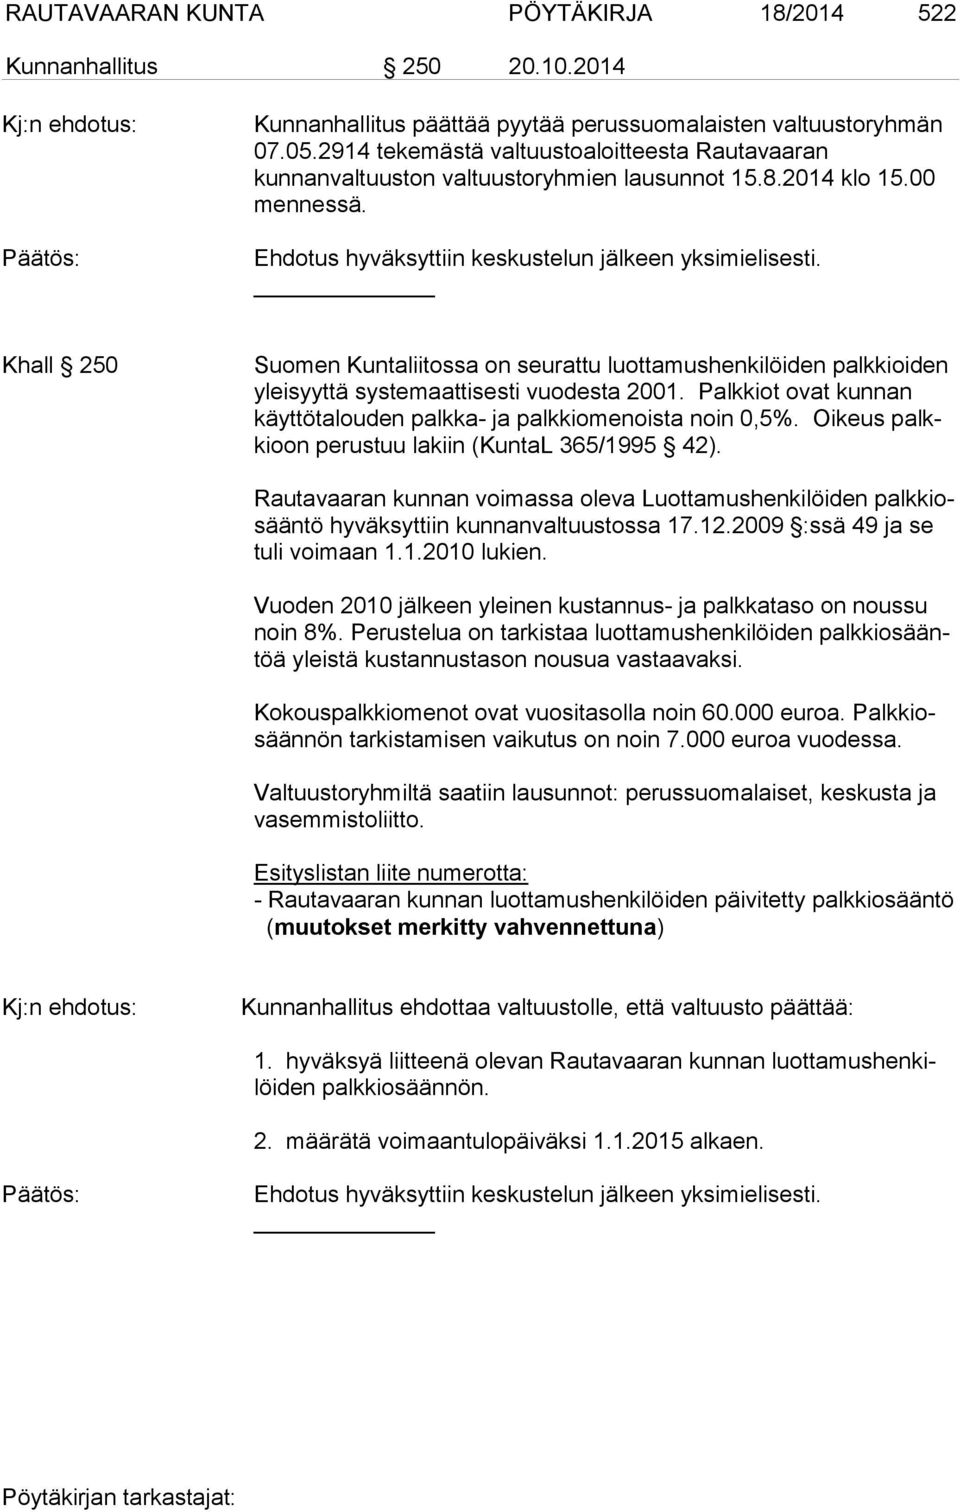 Khall 250 Suomen Kuntaliitossa on seurattu luottamushenkilöiden palkkioiden yleisyyttä systemaattisesti vuodesta 2001. Palkkiot ovat kunnan käyttötalouden palkka- ja palkkiomenoista noin 0,5%.